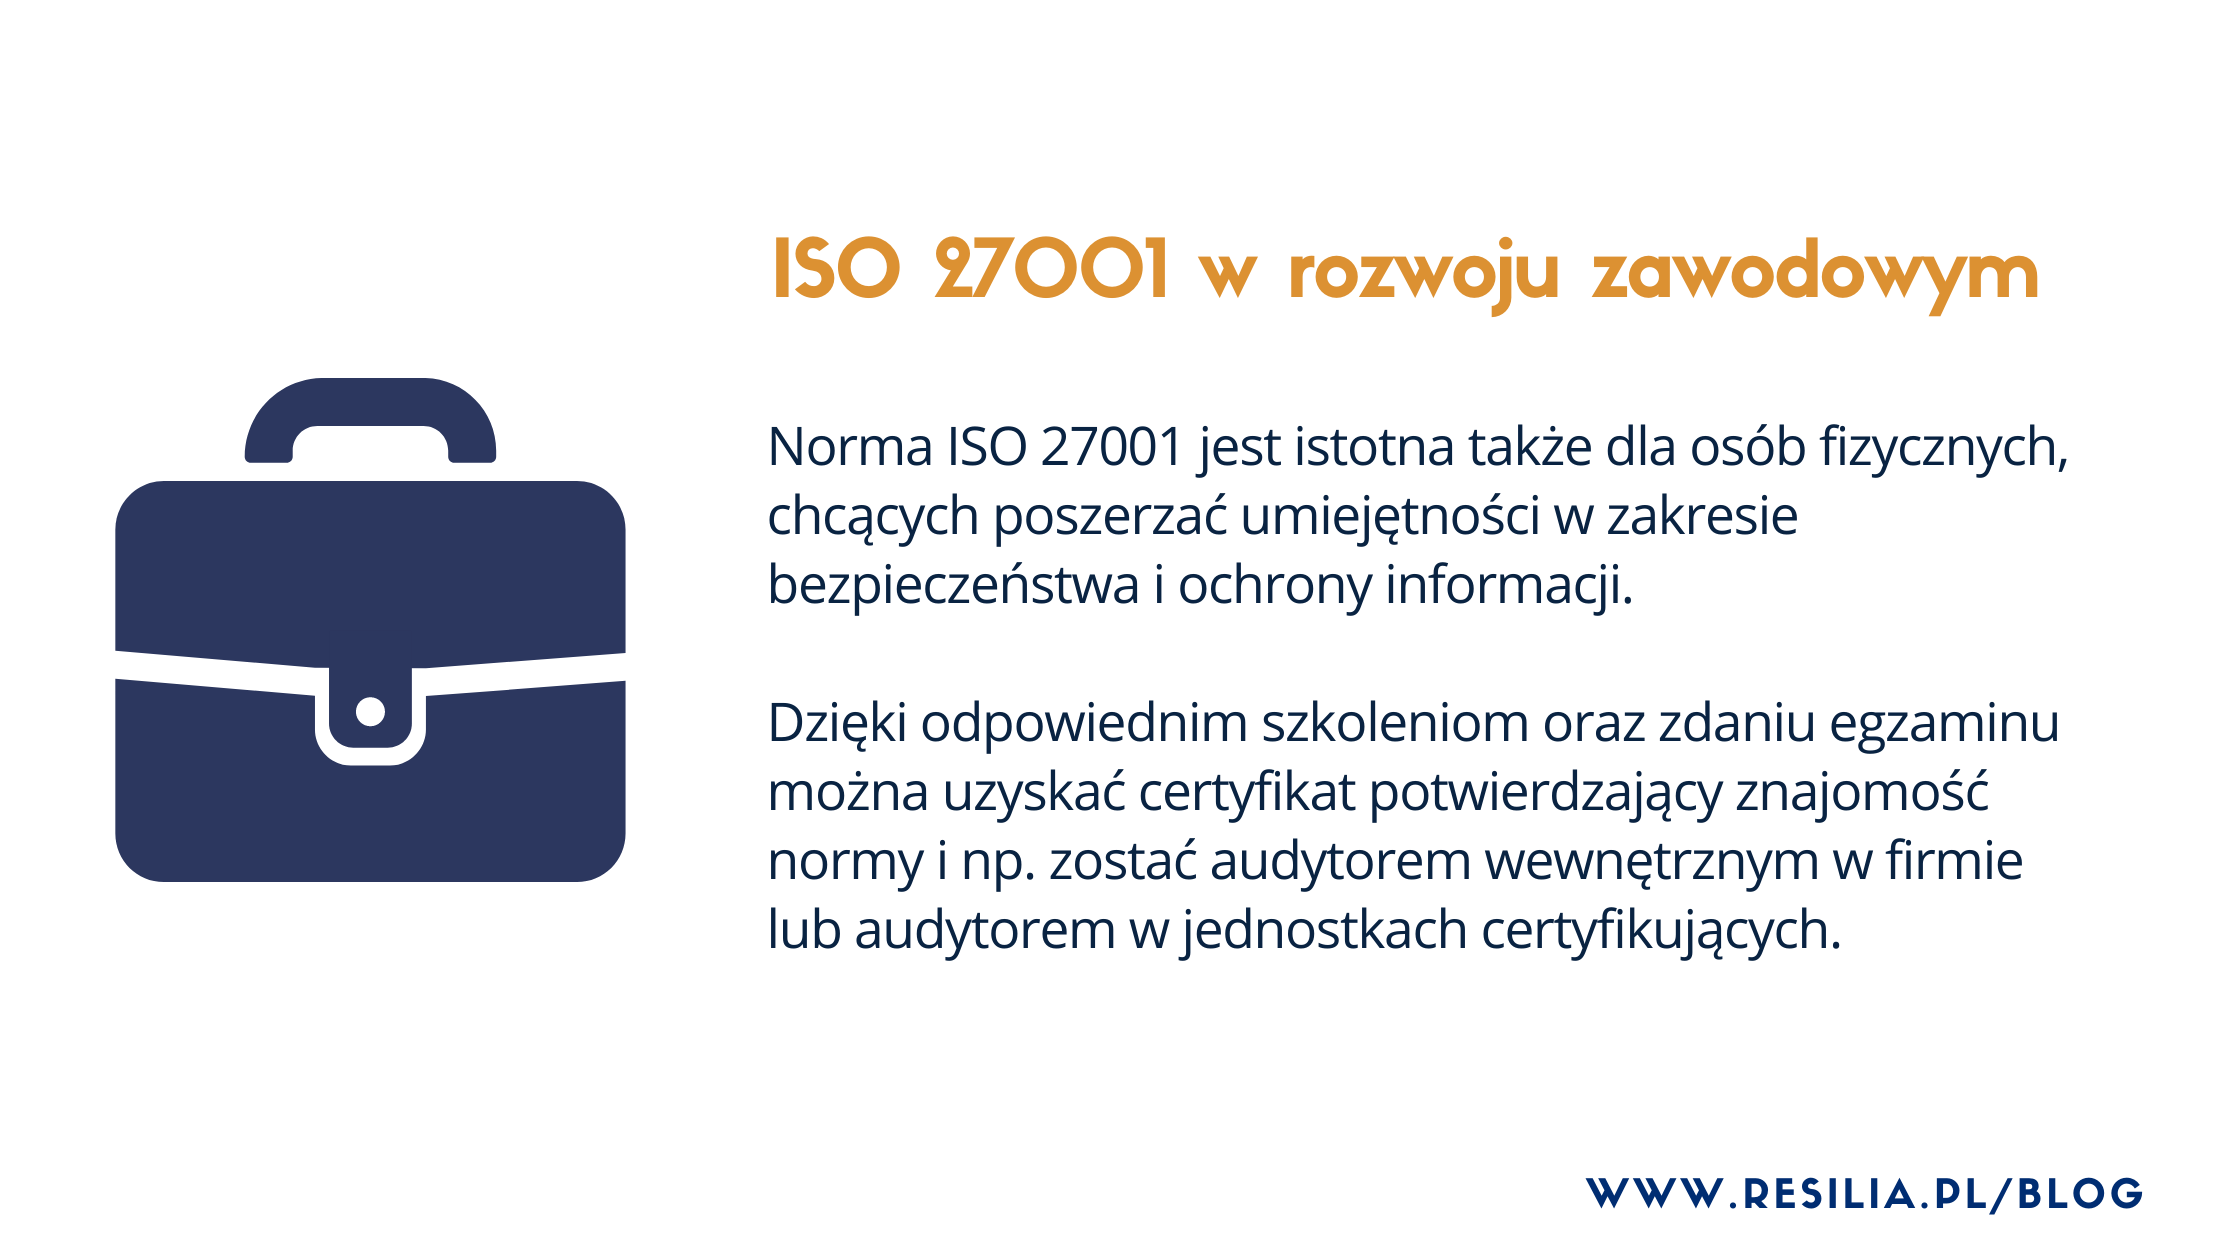 ISO 27001 szkolenie zawodowe